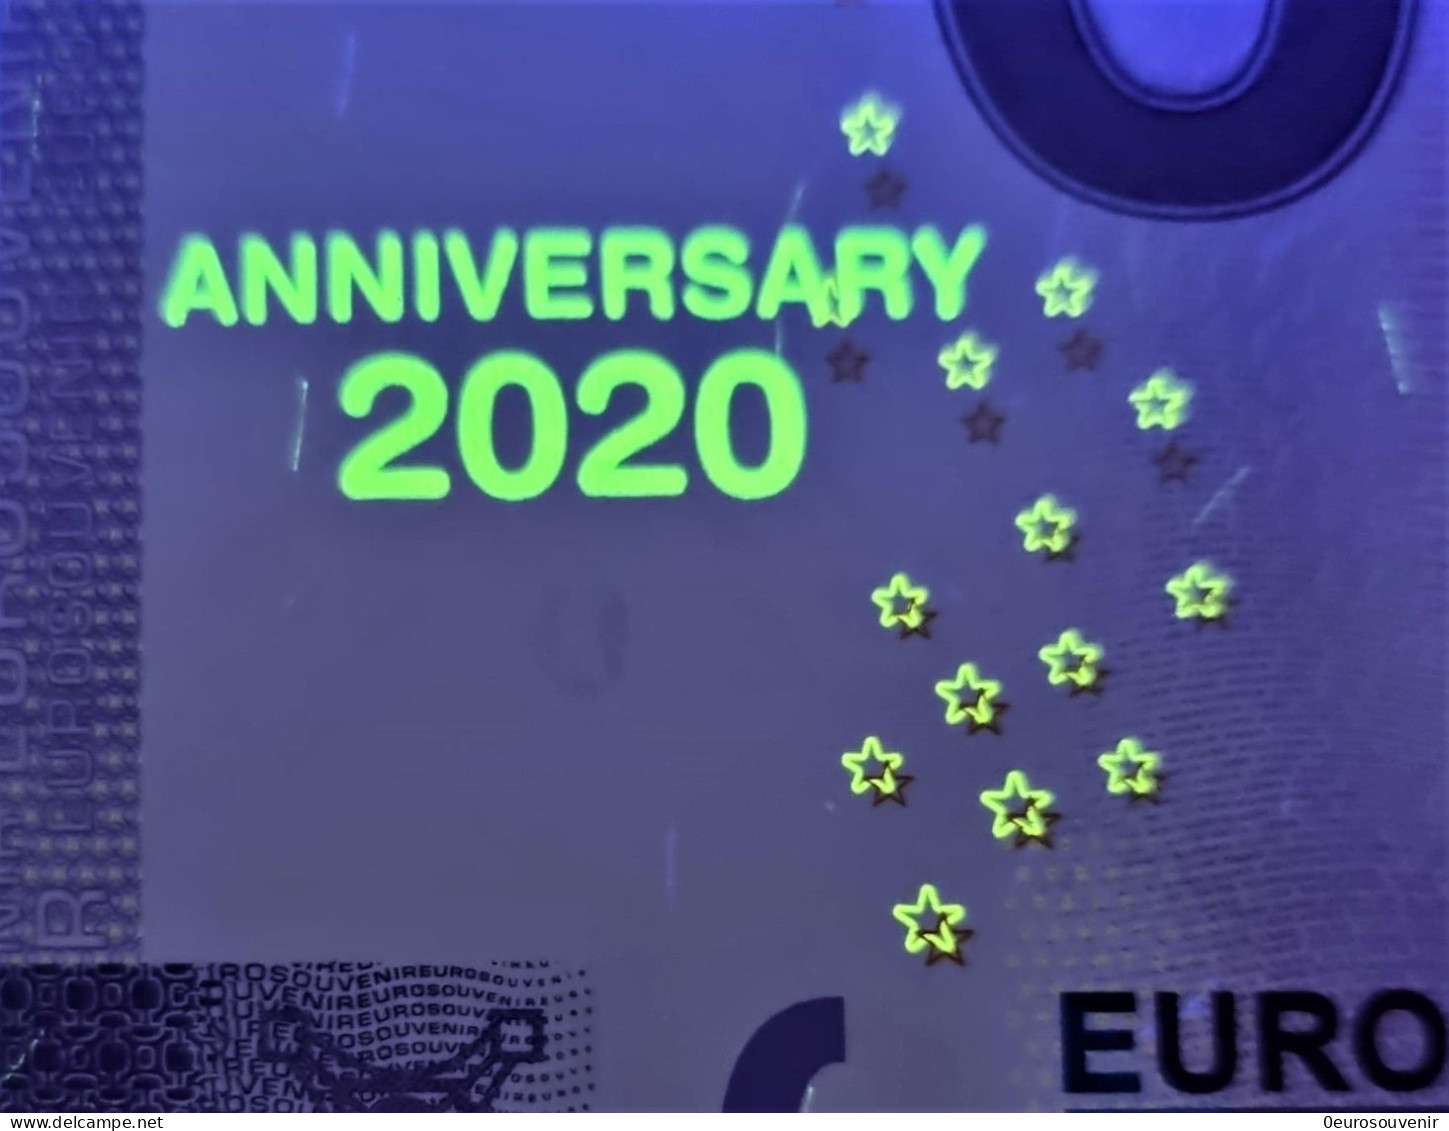 0-Euro XEEK 2021-1 SEA LIFE MÜNCHEN DEUTSCHLAND - GRÖẞTE HAI-VIELFALT Set NORMAL+ANNIVERSARY - Pruebas Privadas